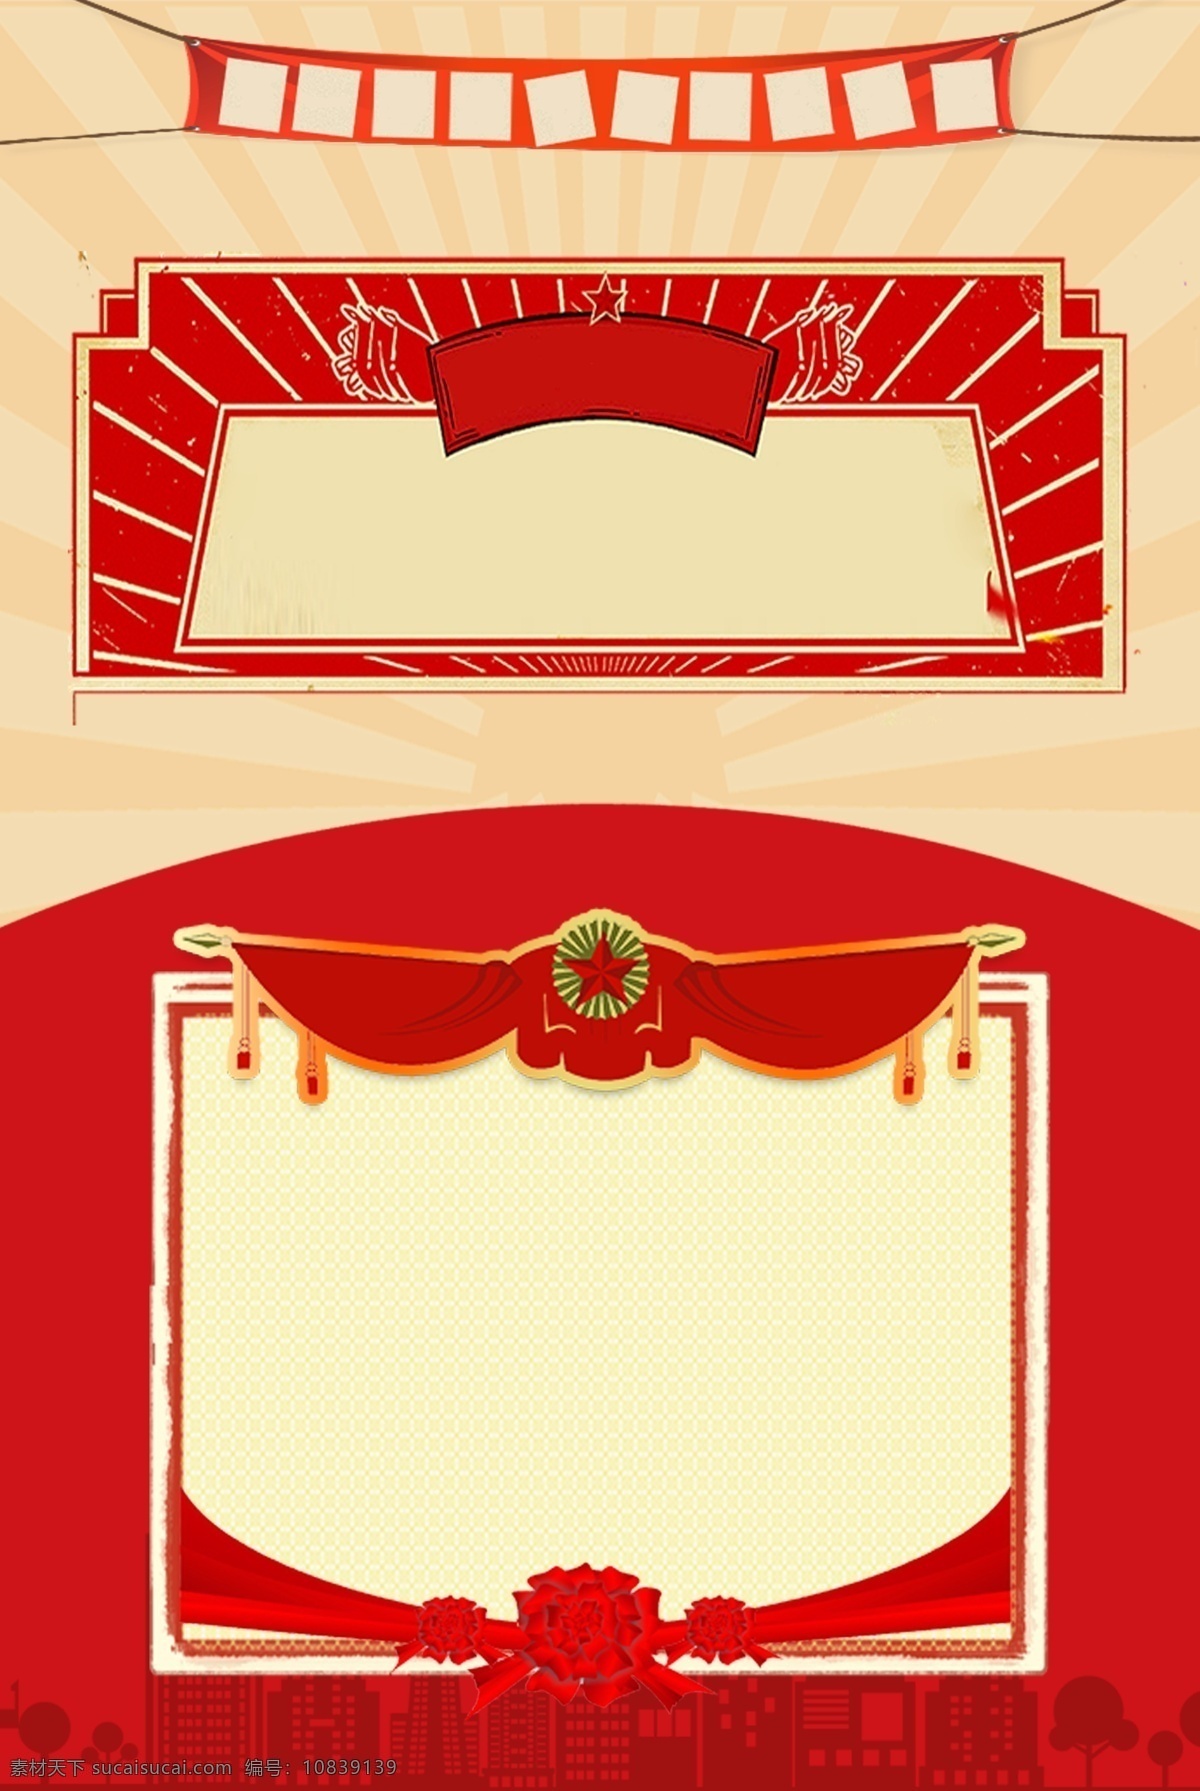 劳动节 红色 边框 海报 背景 五一 经典 红旗 矩形 简约 复古 psd分层 海报背景